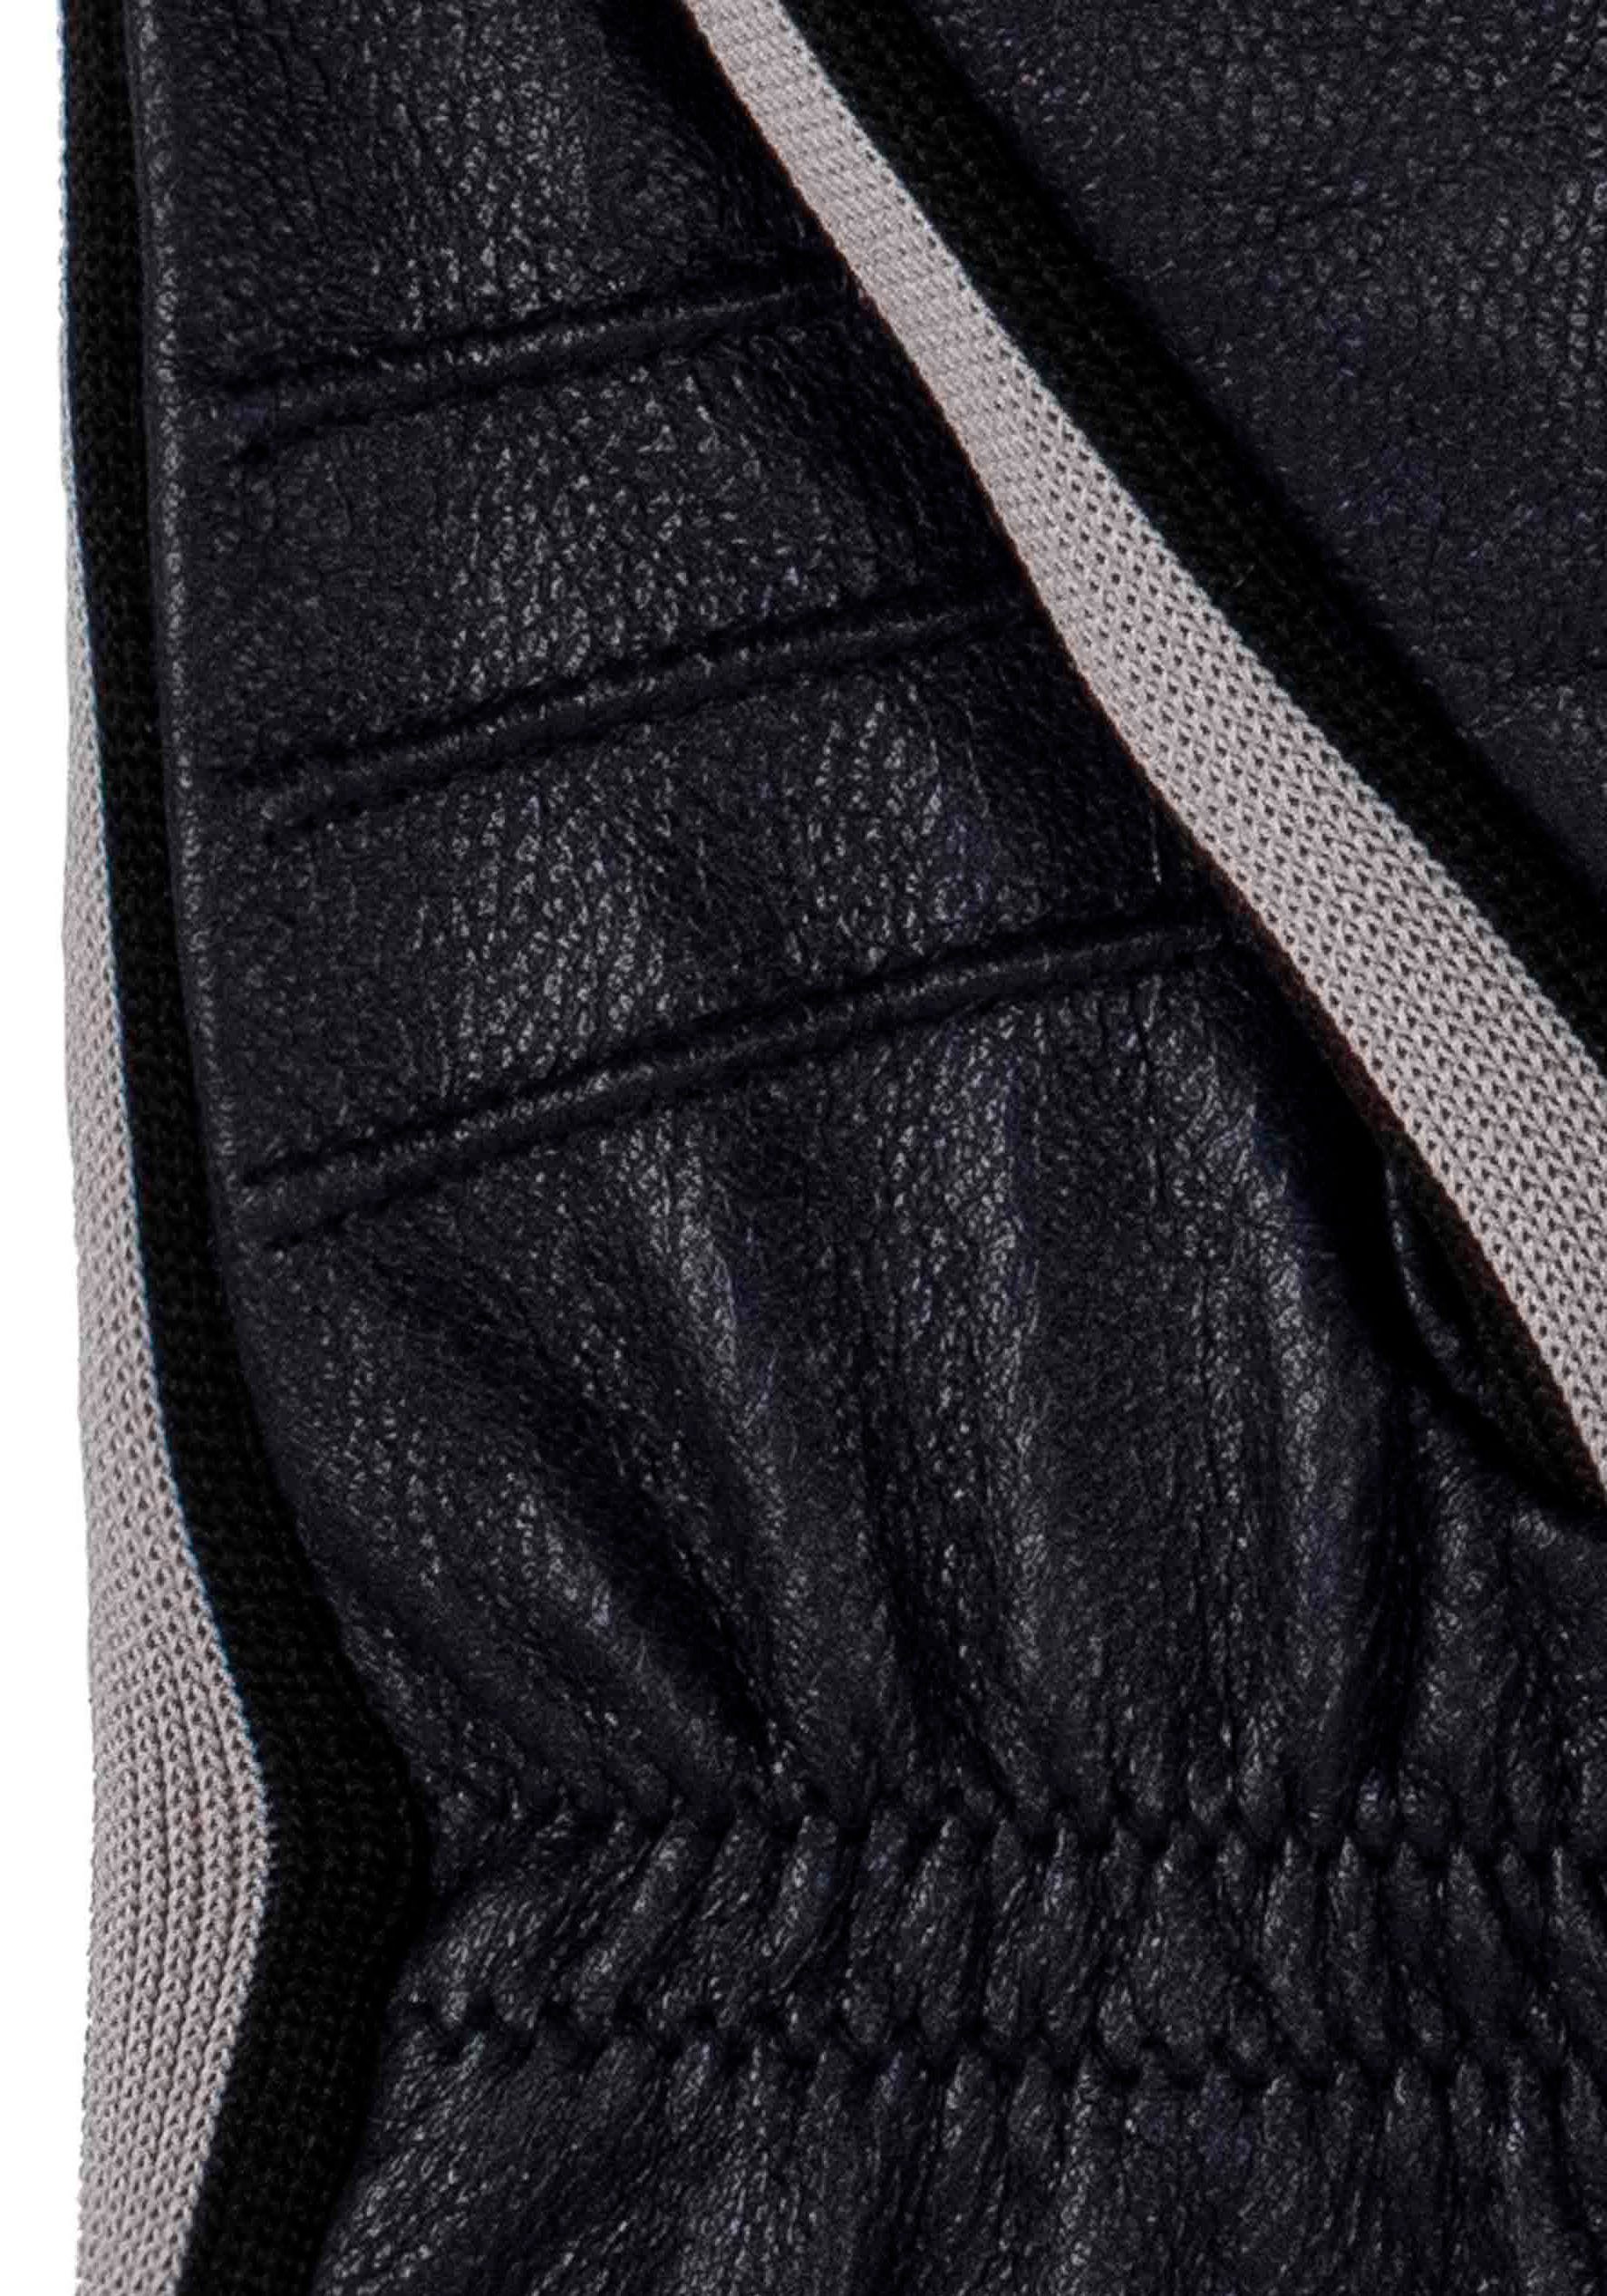 sportliches Look dark Touchfunktion blue Gil Sneaker- KESSLER Touch im mit Lederhandschuhe Design